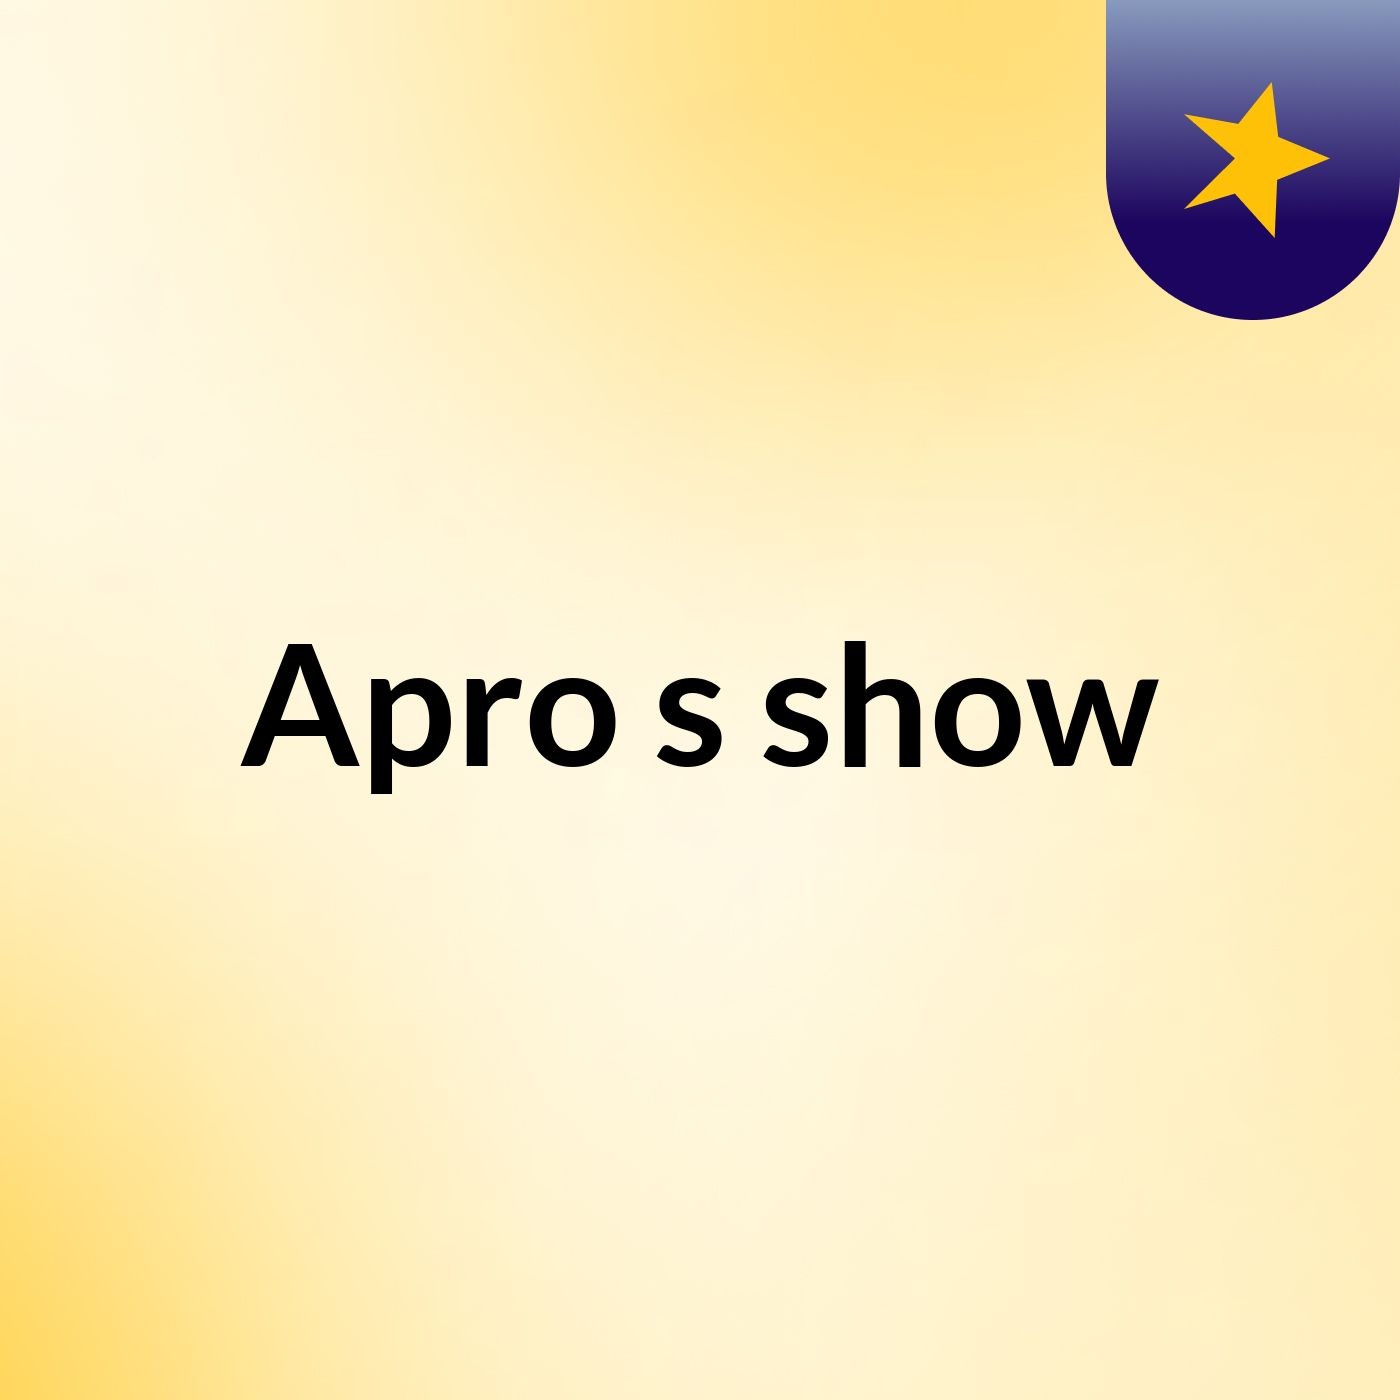 Apro's show